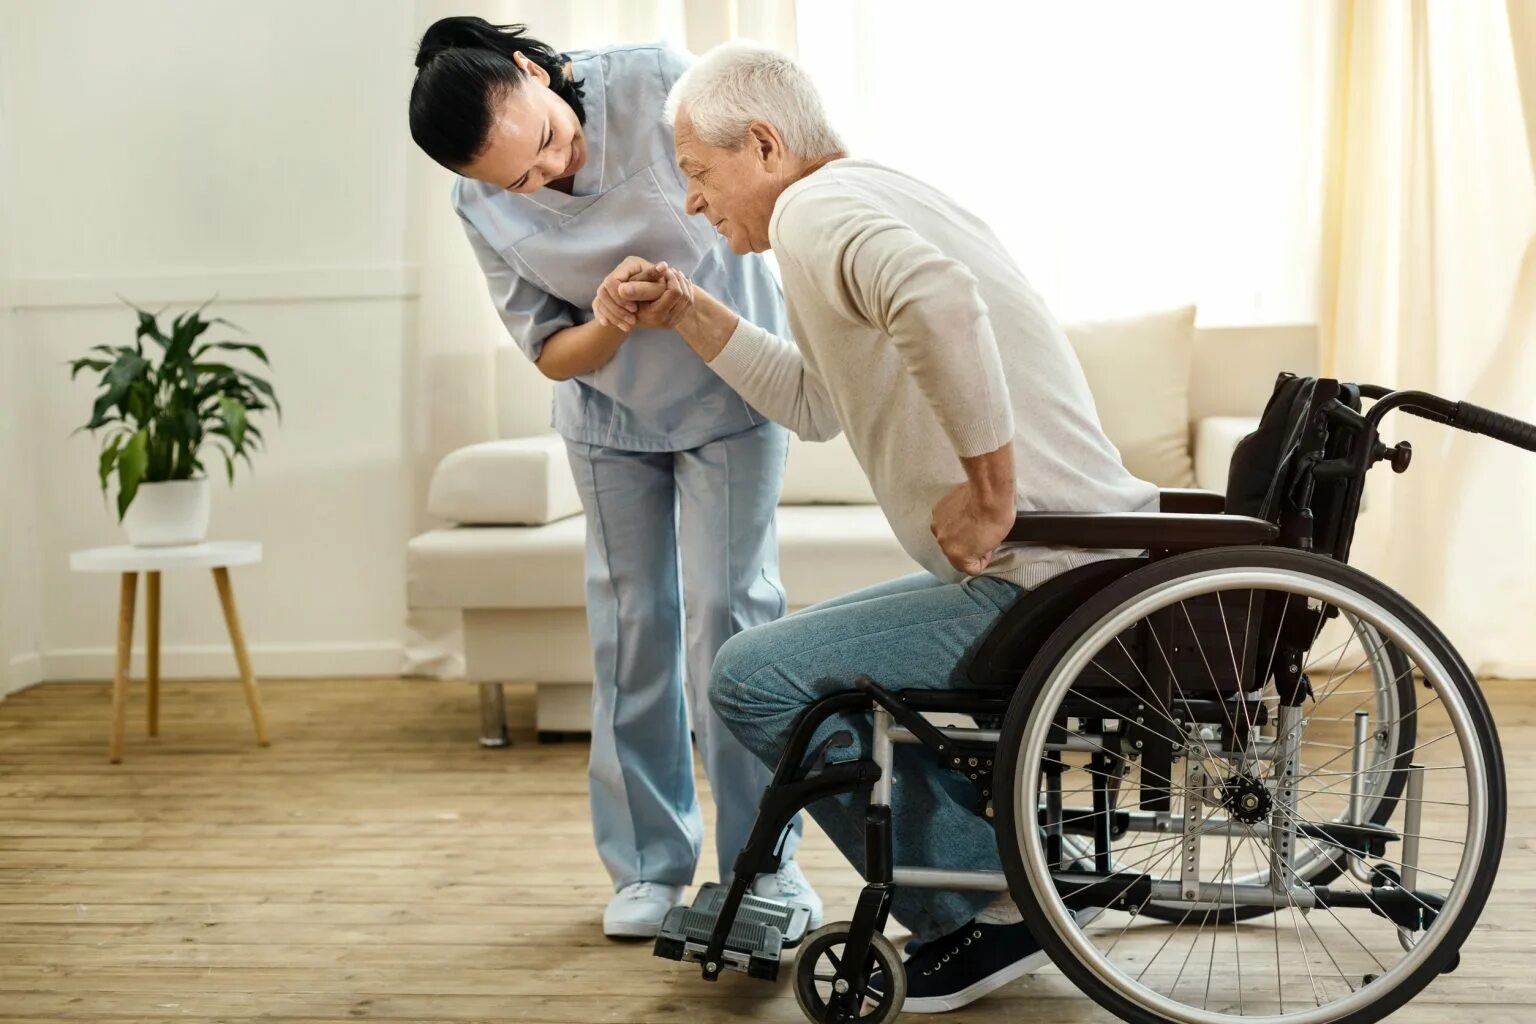 Реабилитация инвалидов. Инвалидность. Реабилитация пожилых. Люди с ограниченными возможностями пожилые. Вайбер инвалиды